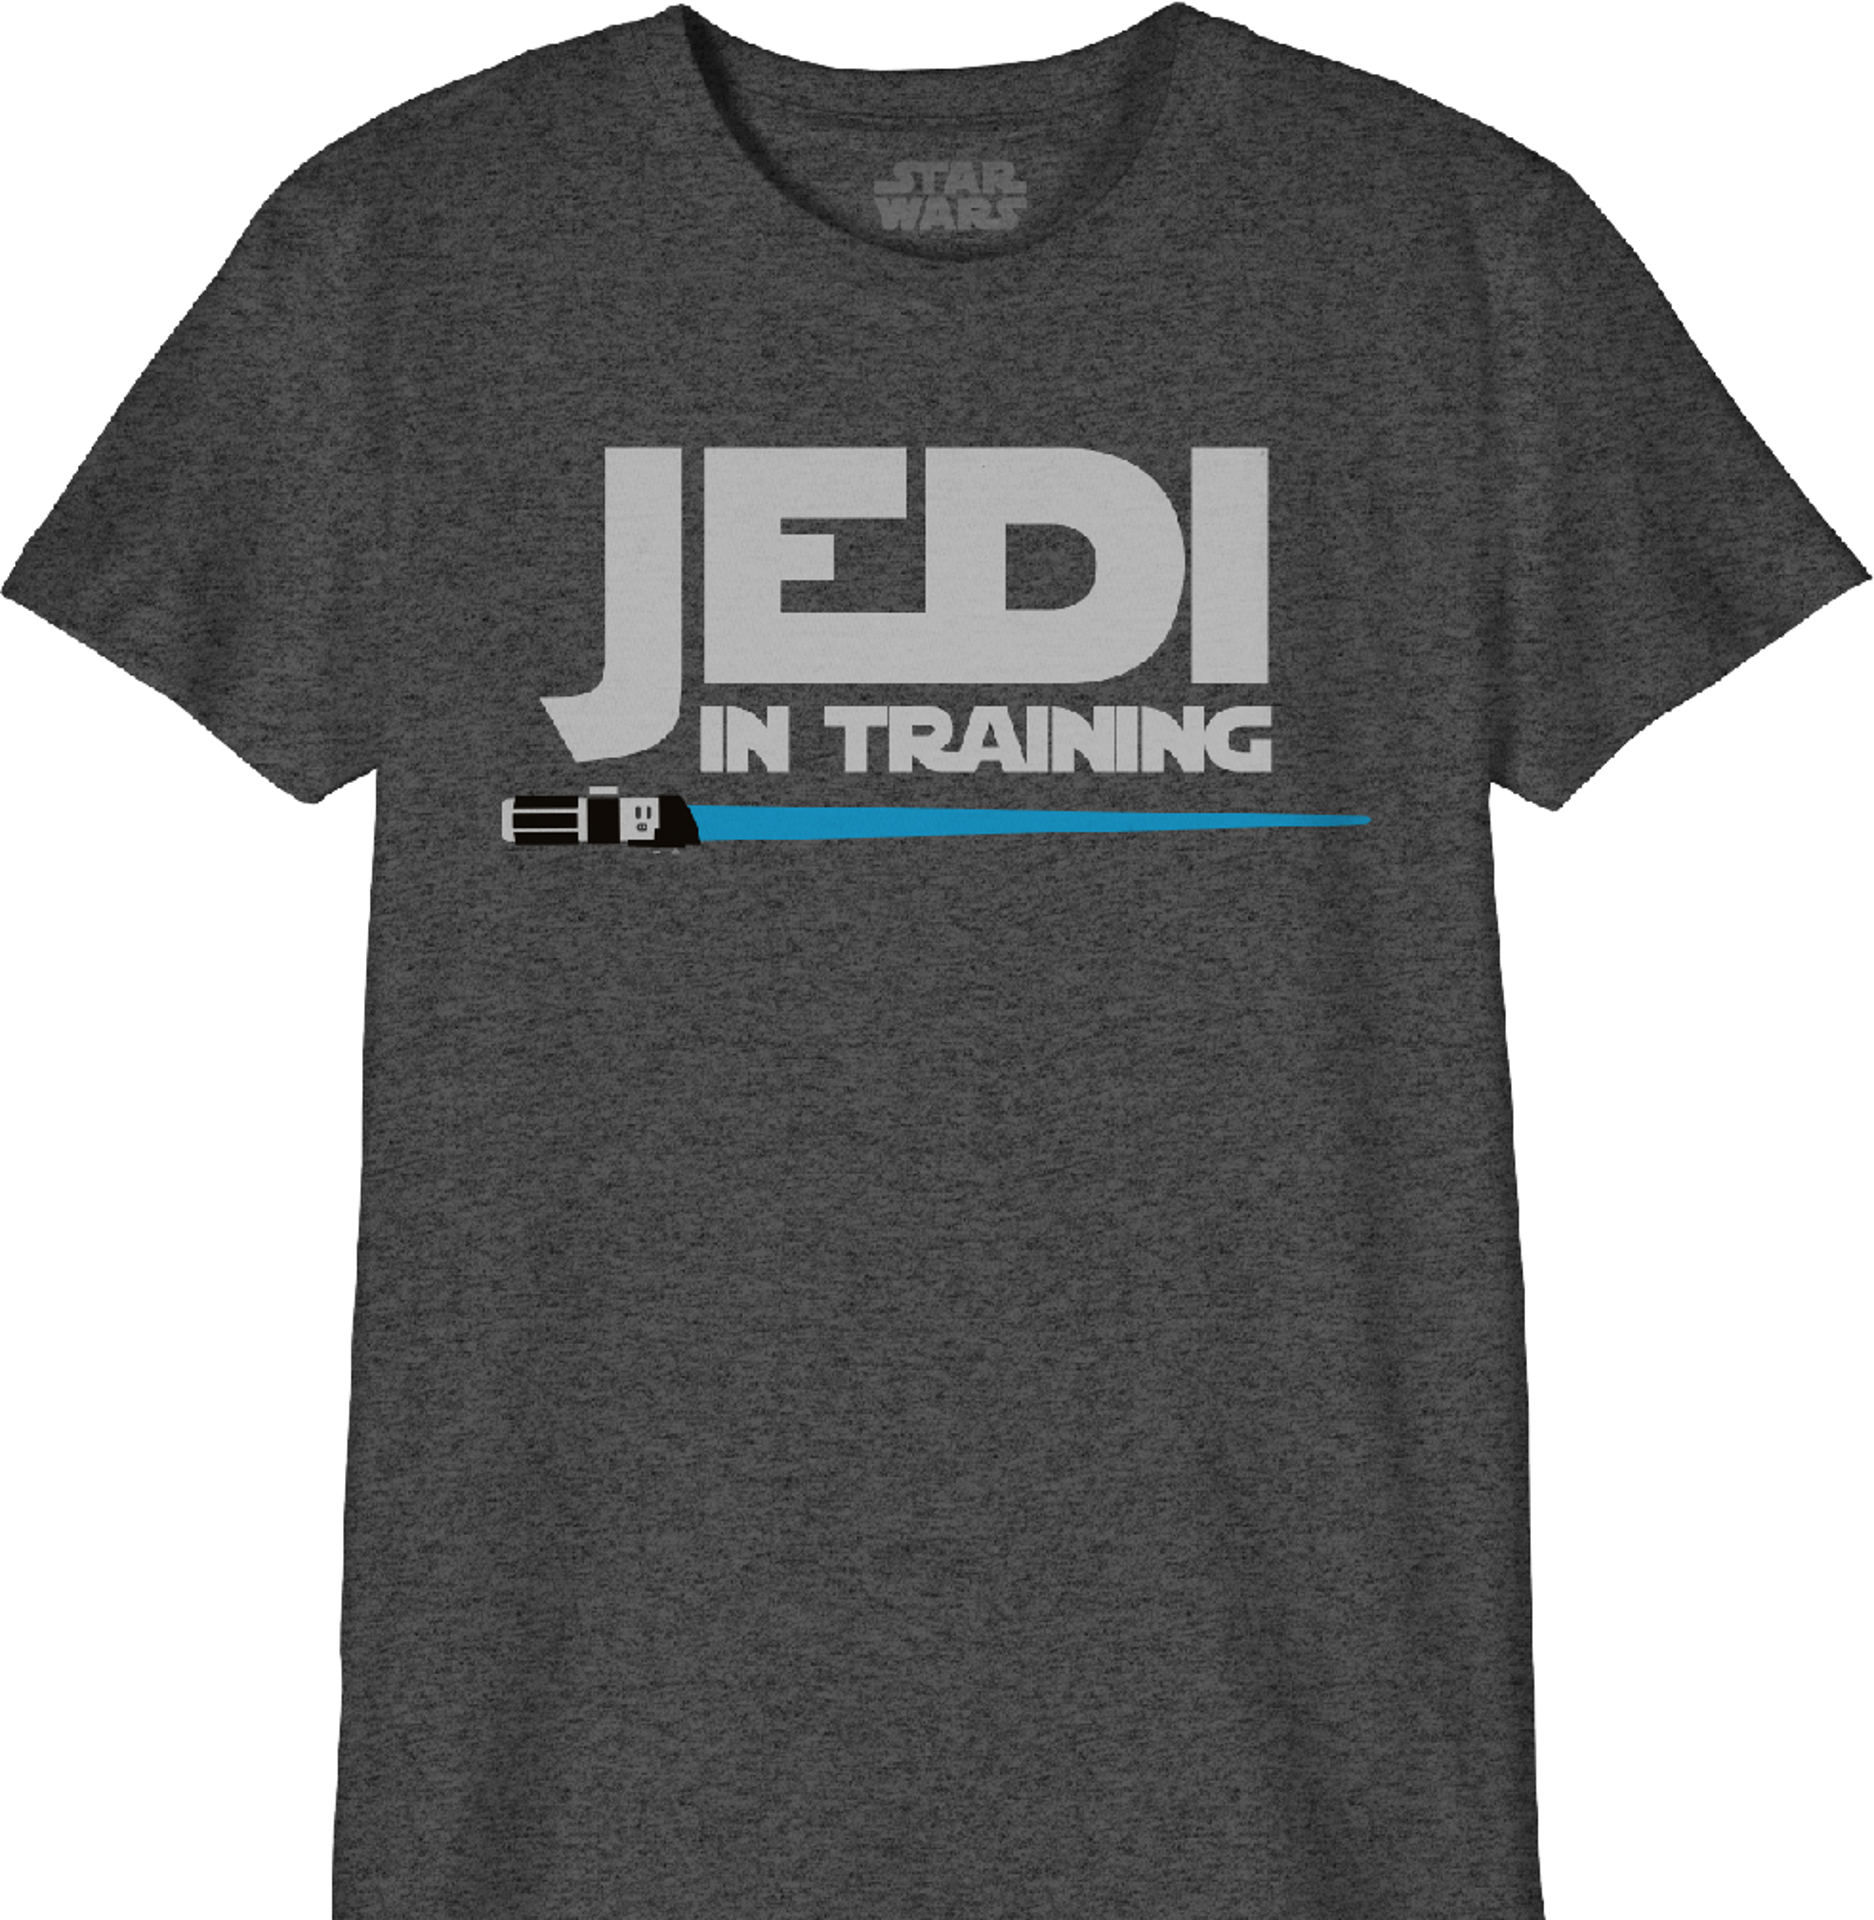 Star Wars - T-Shirt Noir Enfant Jedi en formation - 8 ans